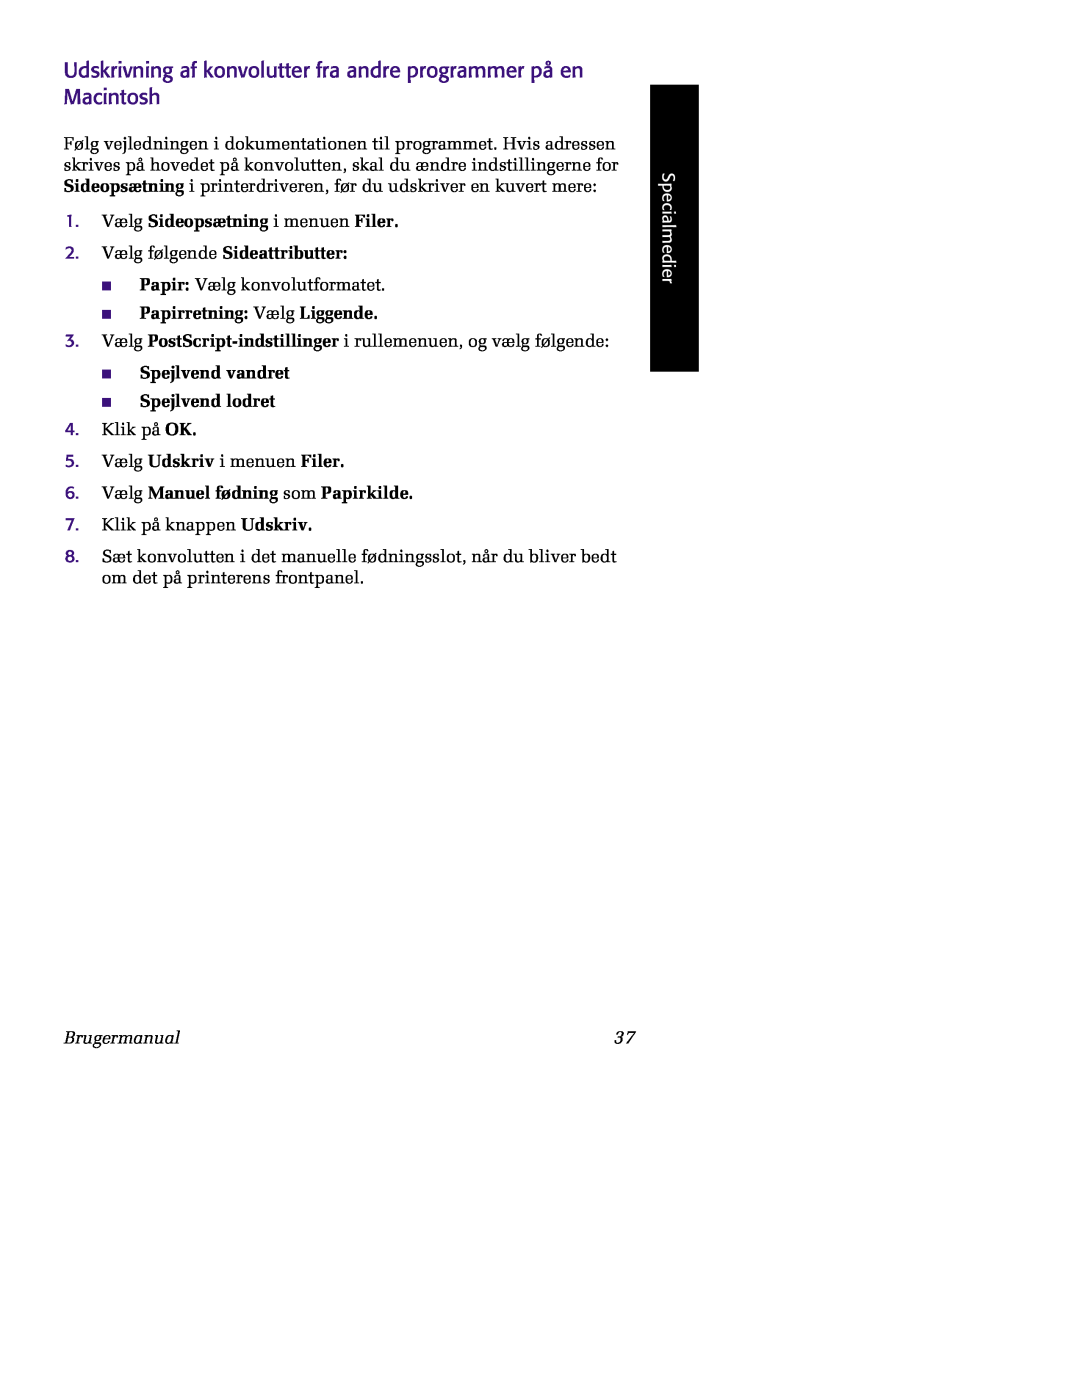 Tektronix 860 manual Udskrivning af konvolutter fra andre programmer på en Macintosh, 6. Vælg Manuel fødning som Papirkilde 